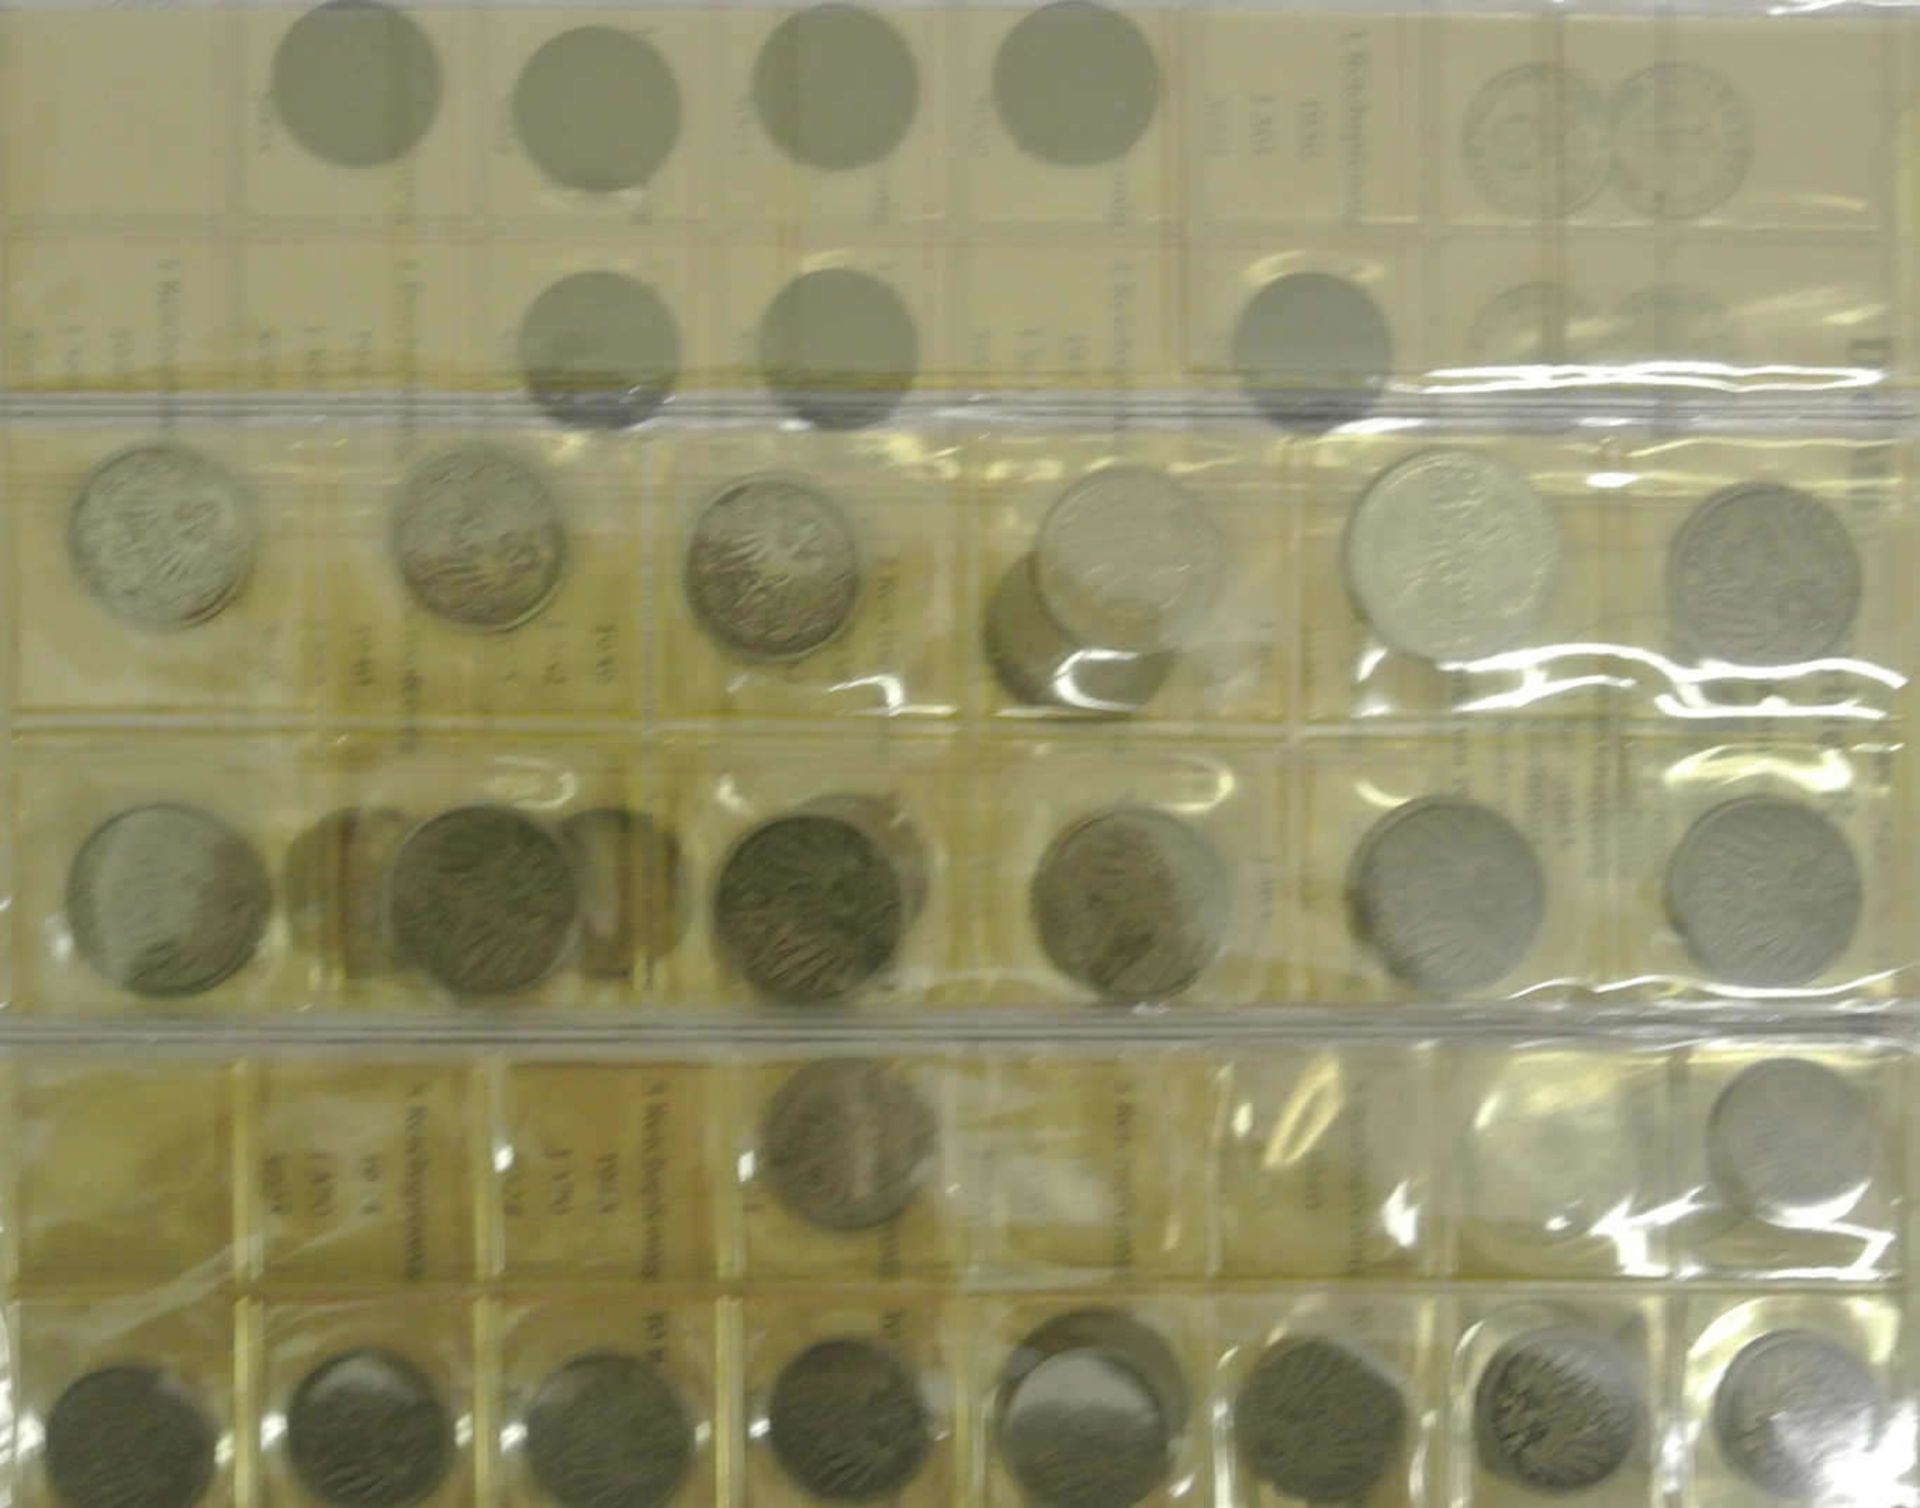 Kleine Teilsammlung Münzen Deutsches Reich, dabei viele Silbermünzen, z.Bsp. 9x 2 Mark Hindenburg - Bild 2 aus 3